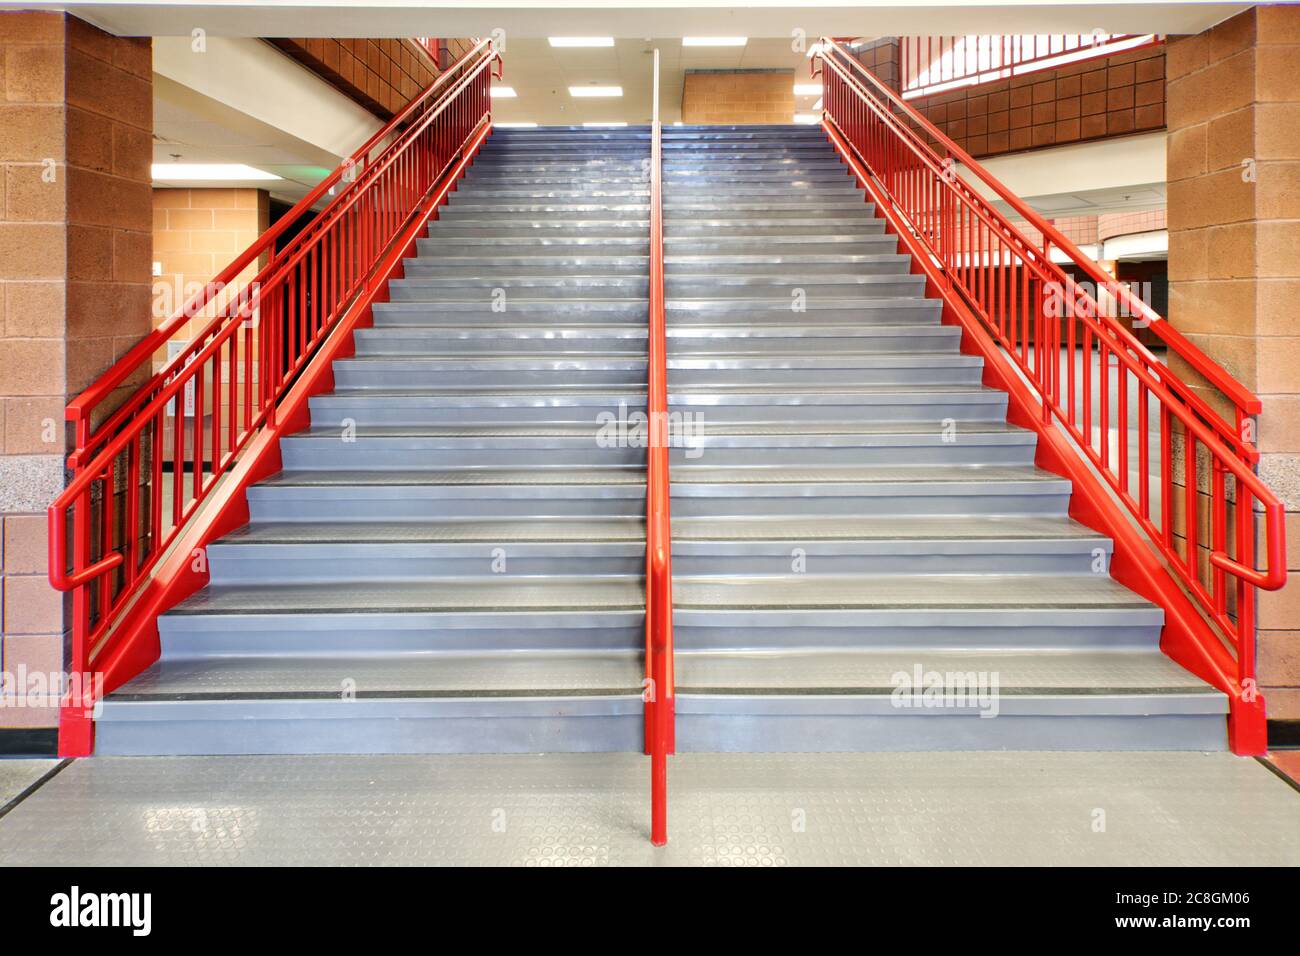 Escalones antideslizantes en los escalones de una escalera de la escuela primaria. Foto de stock